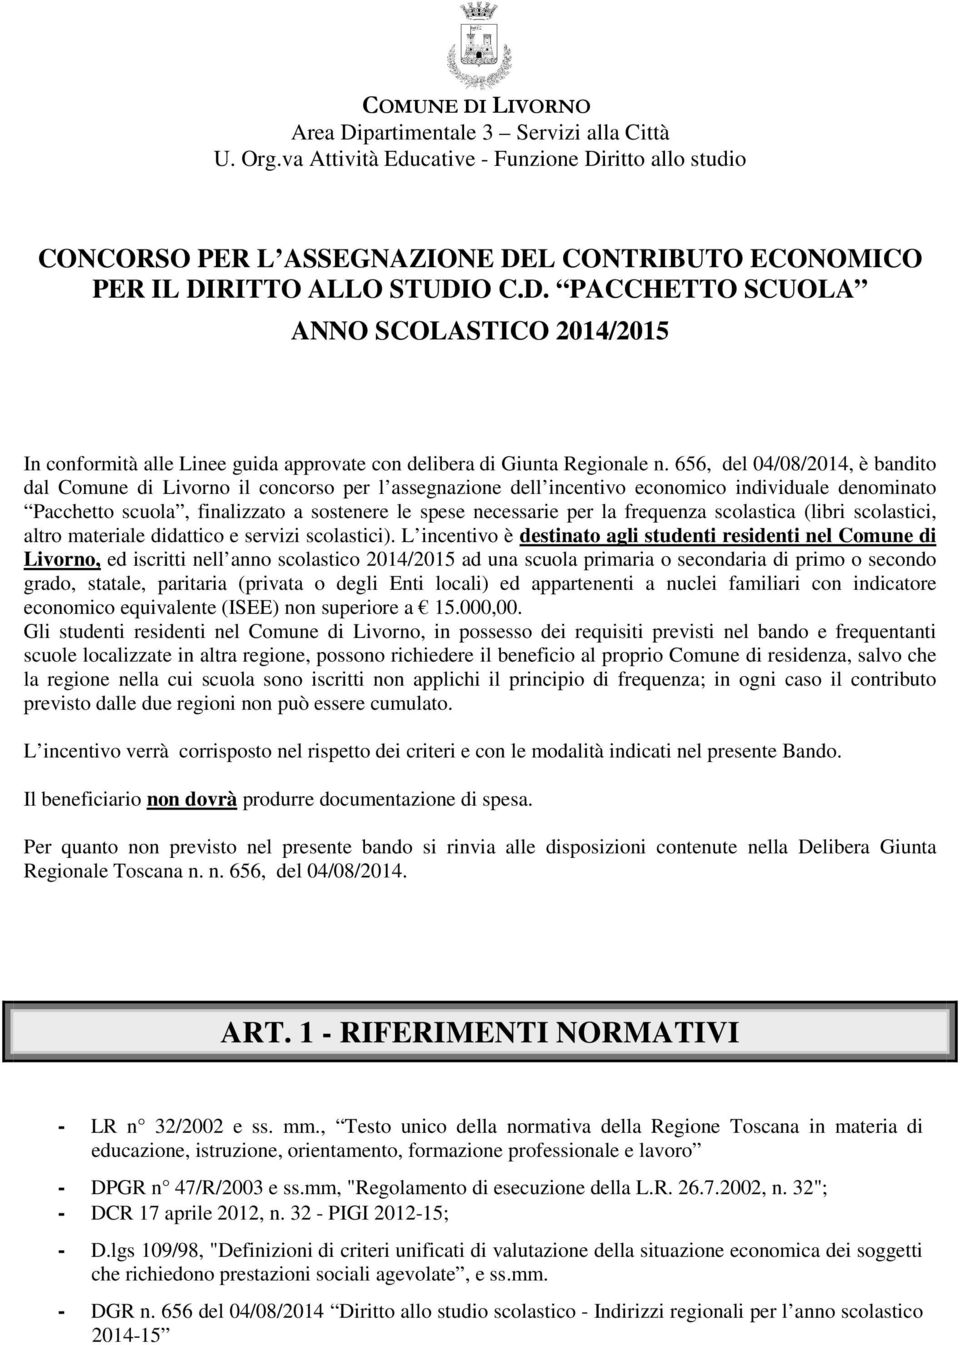 656, del 04/08/2014, è bandito dal Comune di Livorno il concorso per l assegnazione dell incentivo economico individuale denominato Pacchetto scuola, finalizzato a sostenere le spese necessarie per